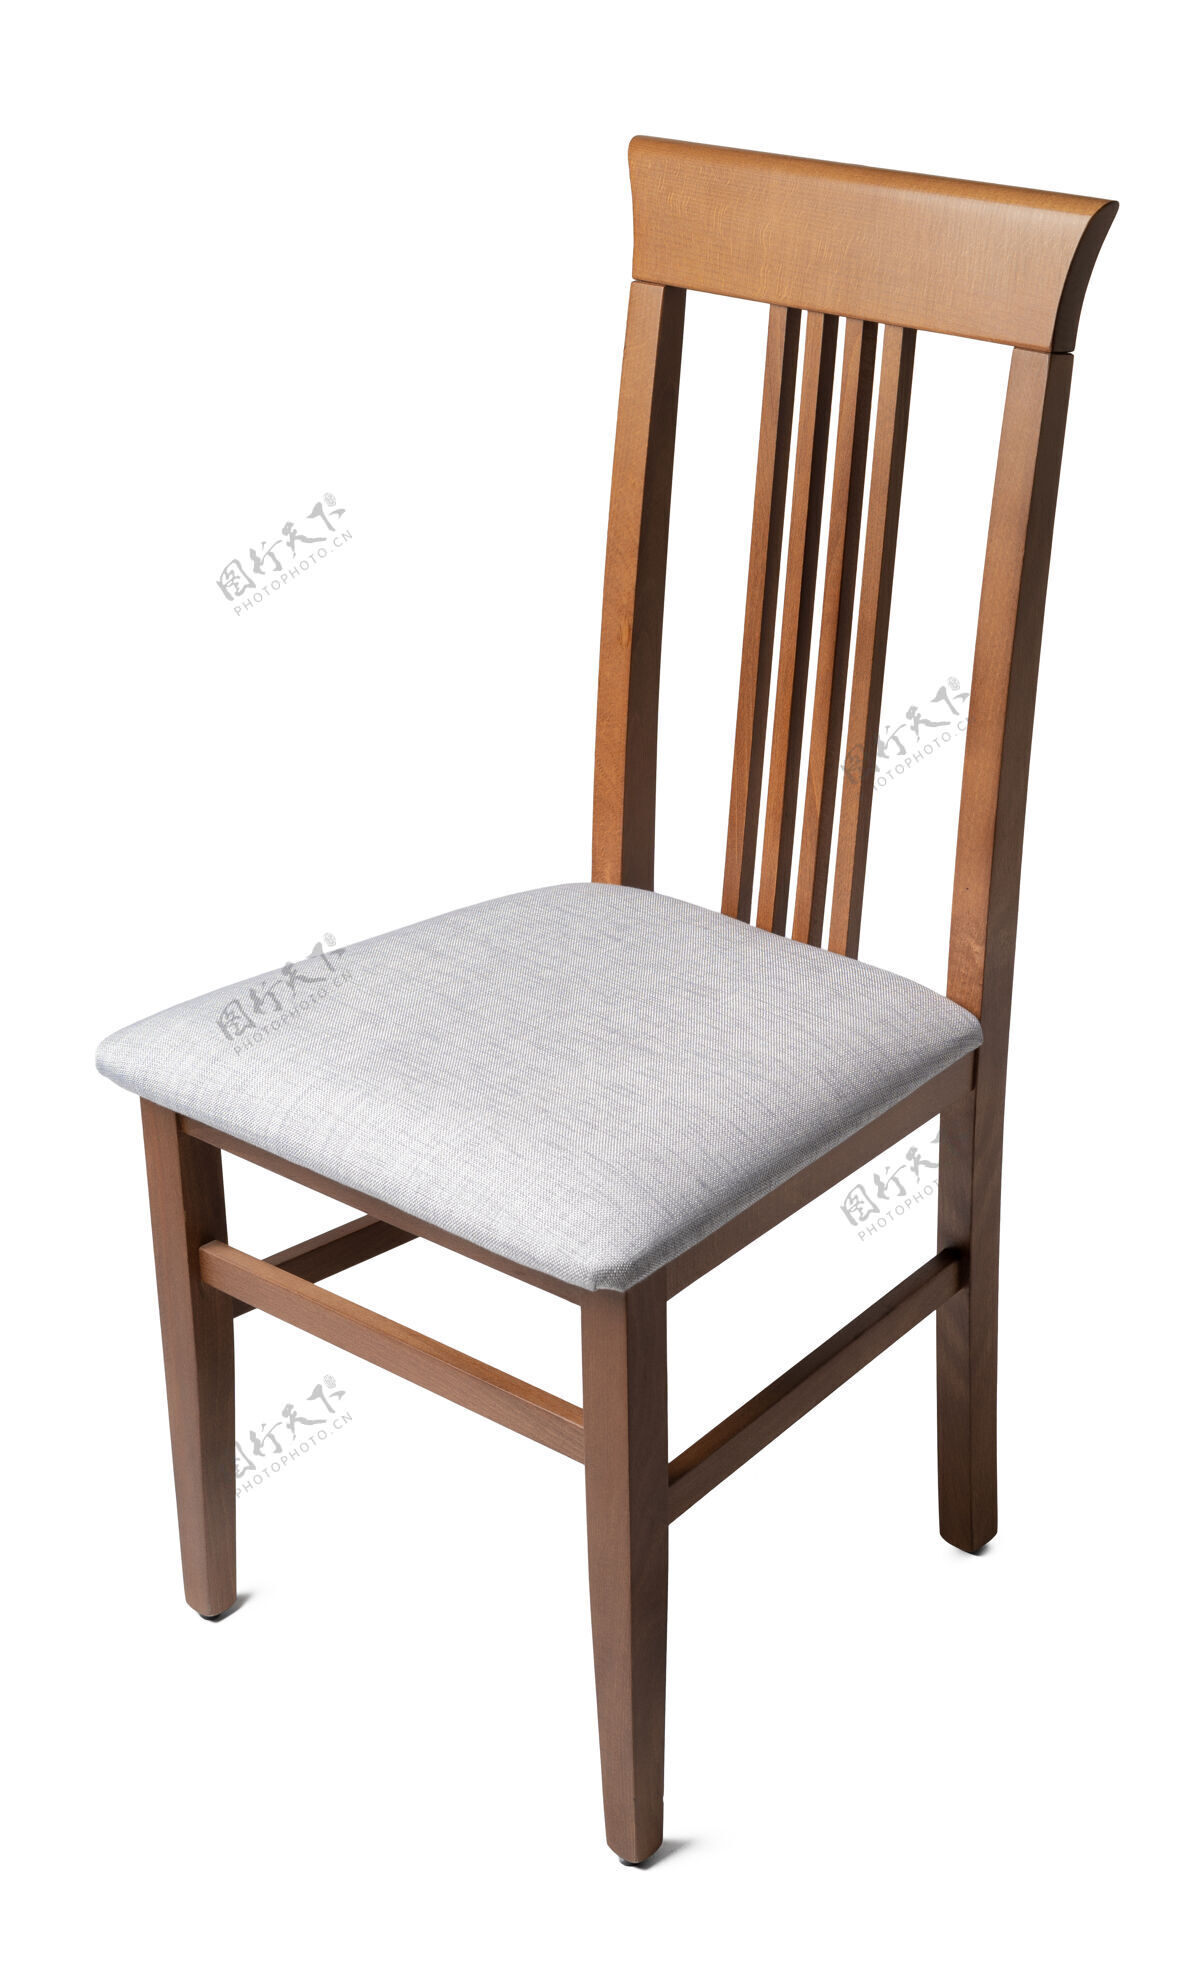 坐姿优雅舒适的椅子舒适质感扶手椅